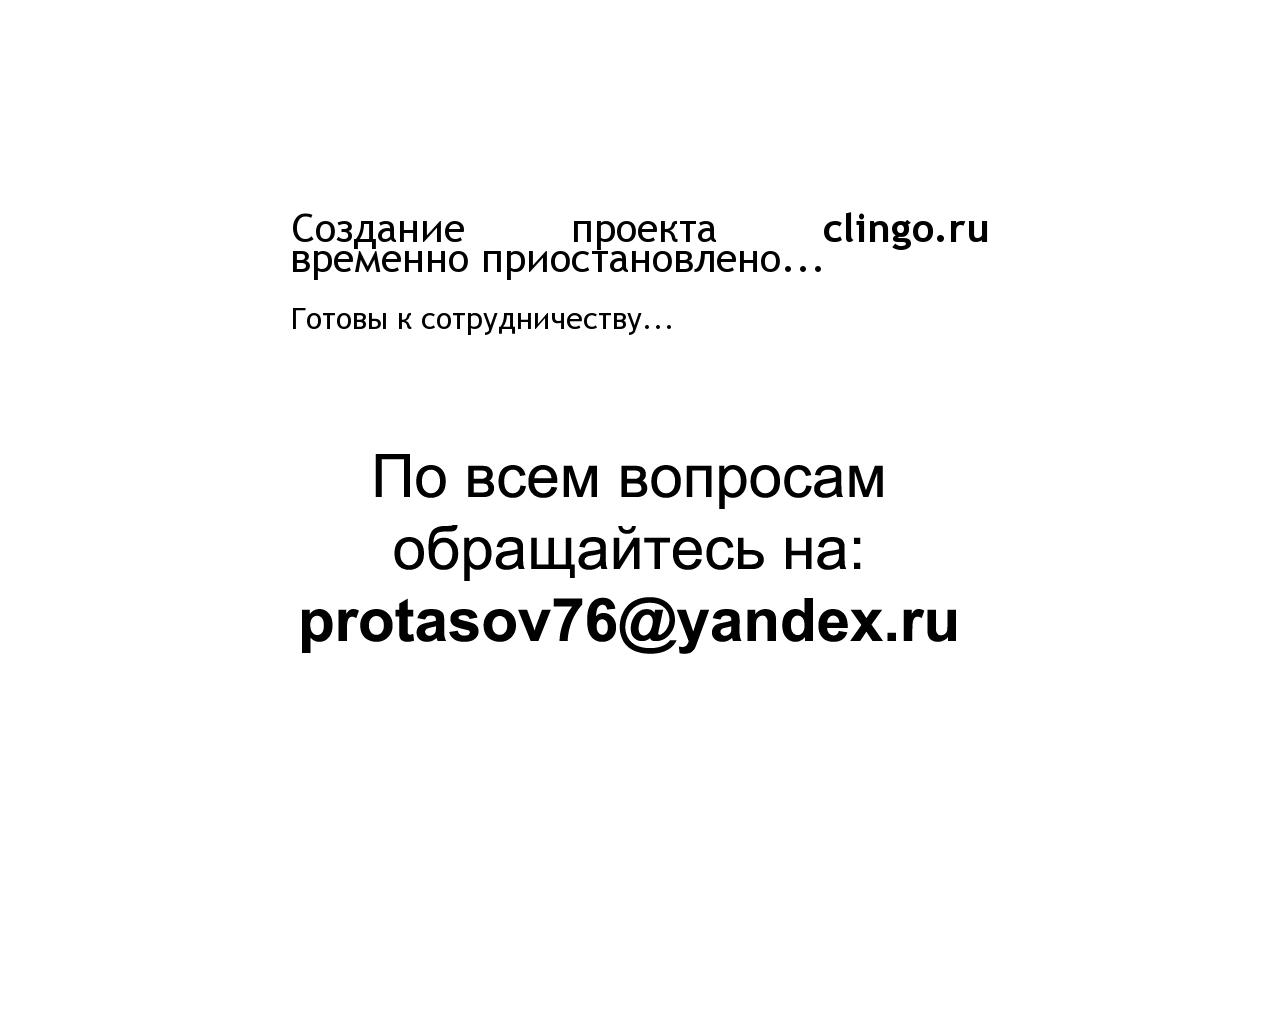 Изображение сайта clingo.ru в разрешении 1280x1024